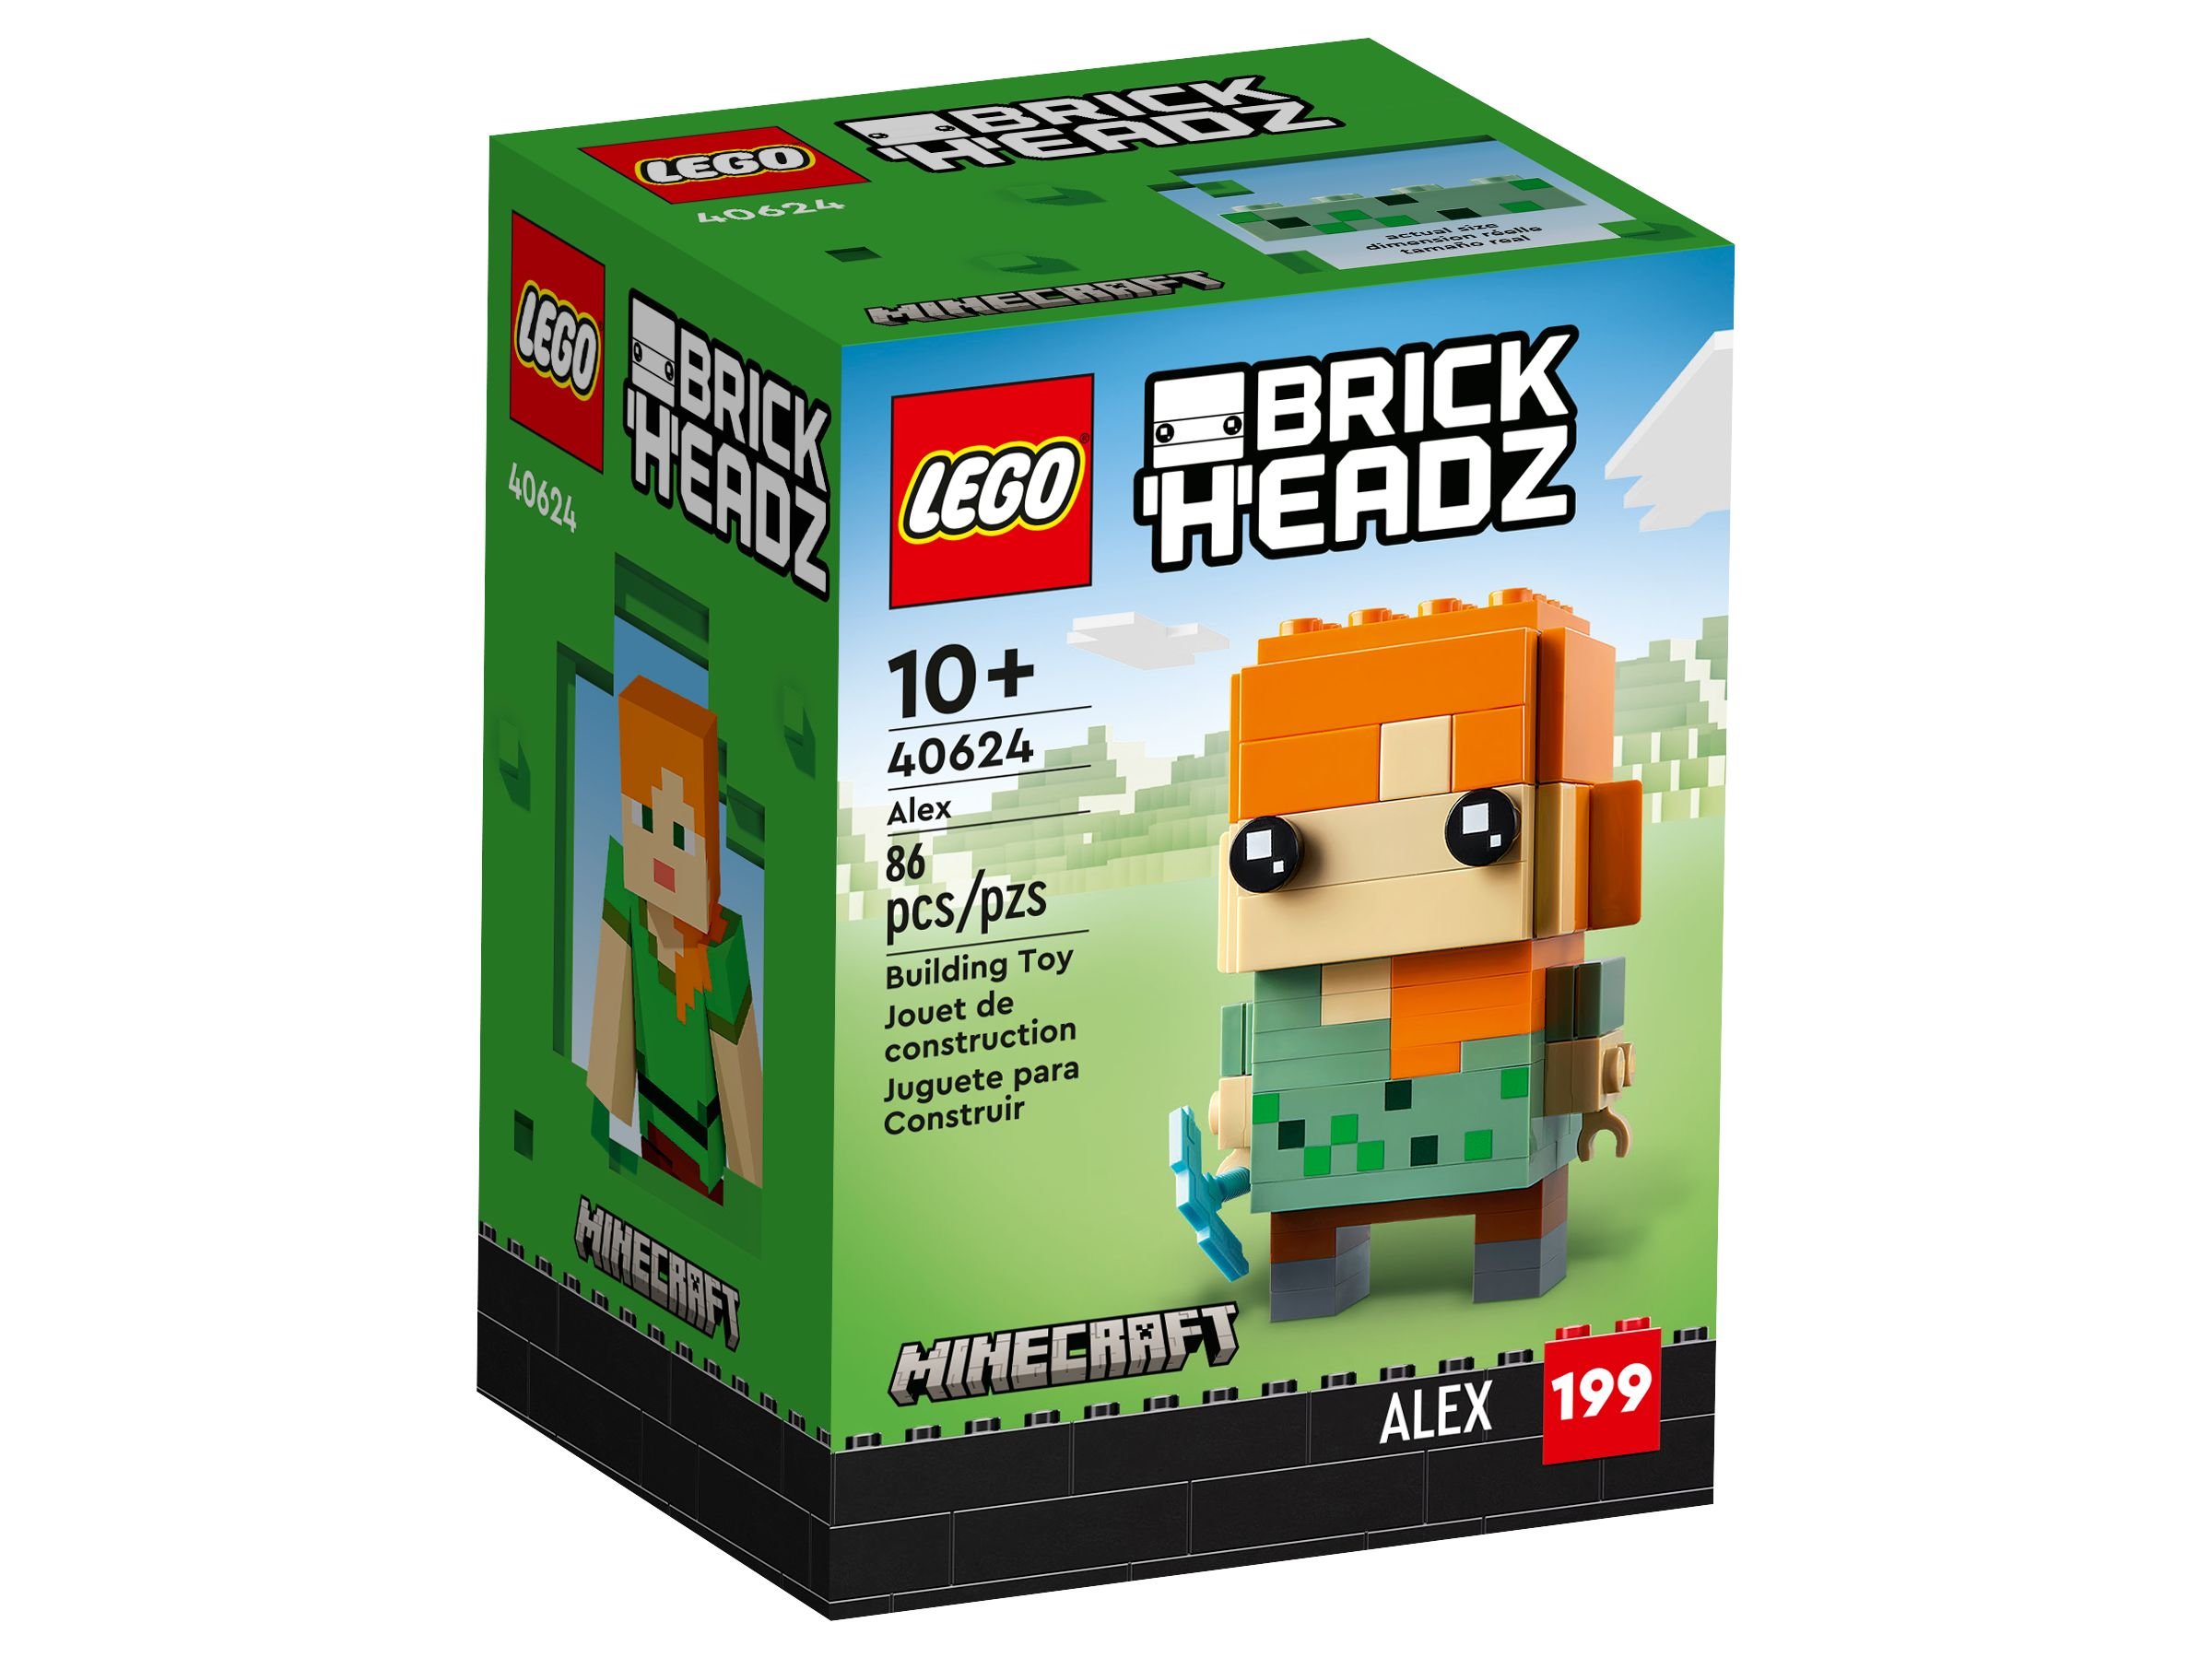 LEGO BrickHeadz 40624 Alex LEGO_40624_alt1.jpg